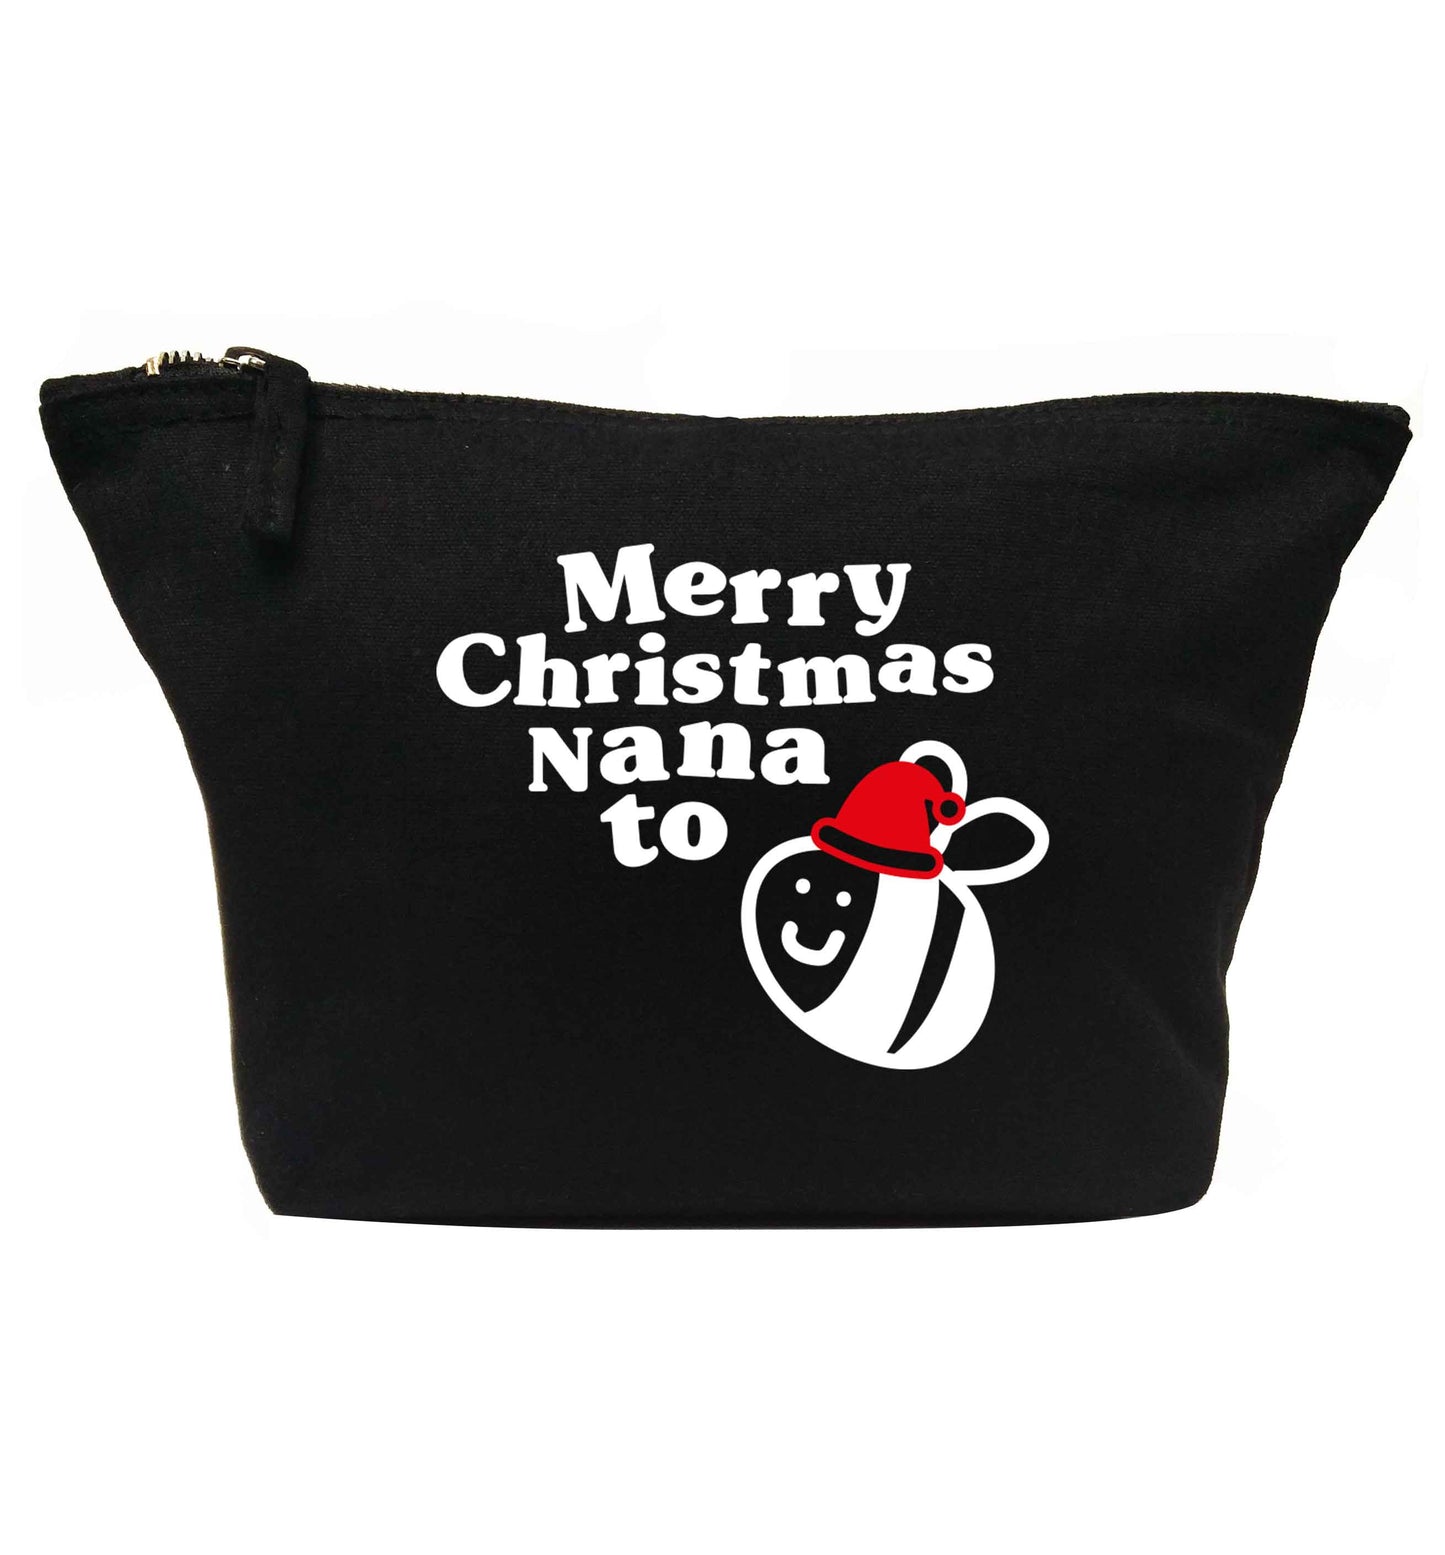 Merry Christmas nana to be | makeup / wash bag